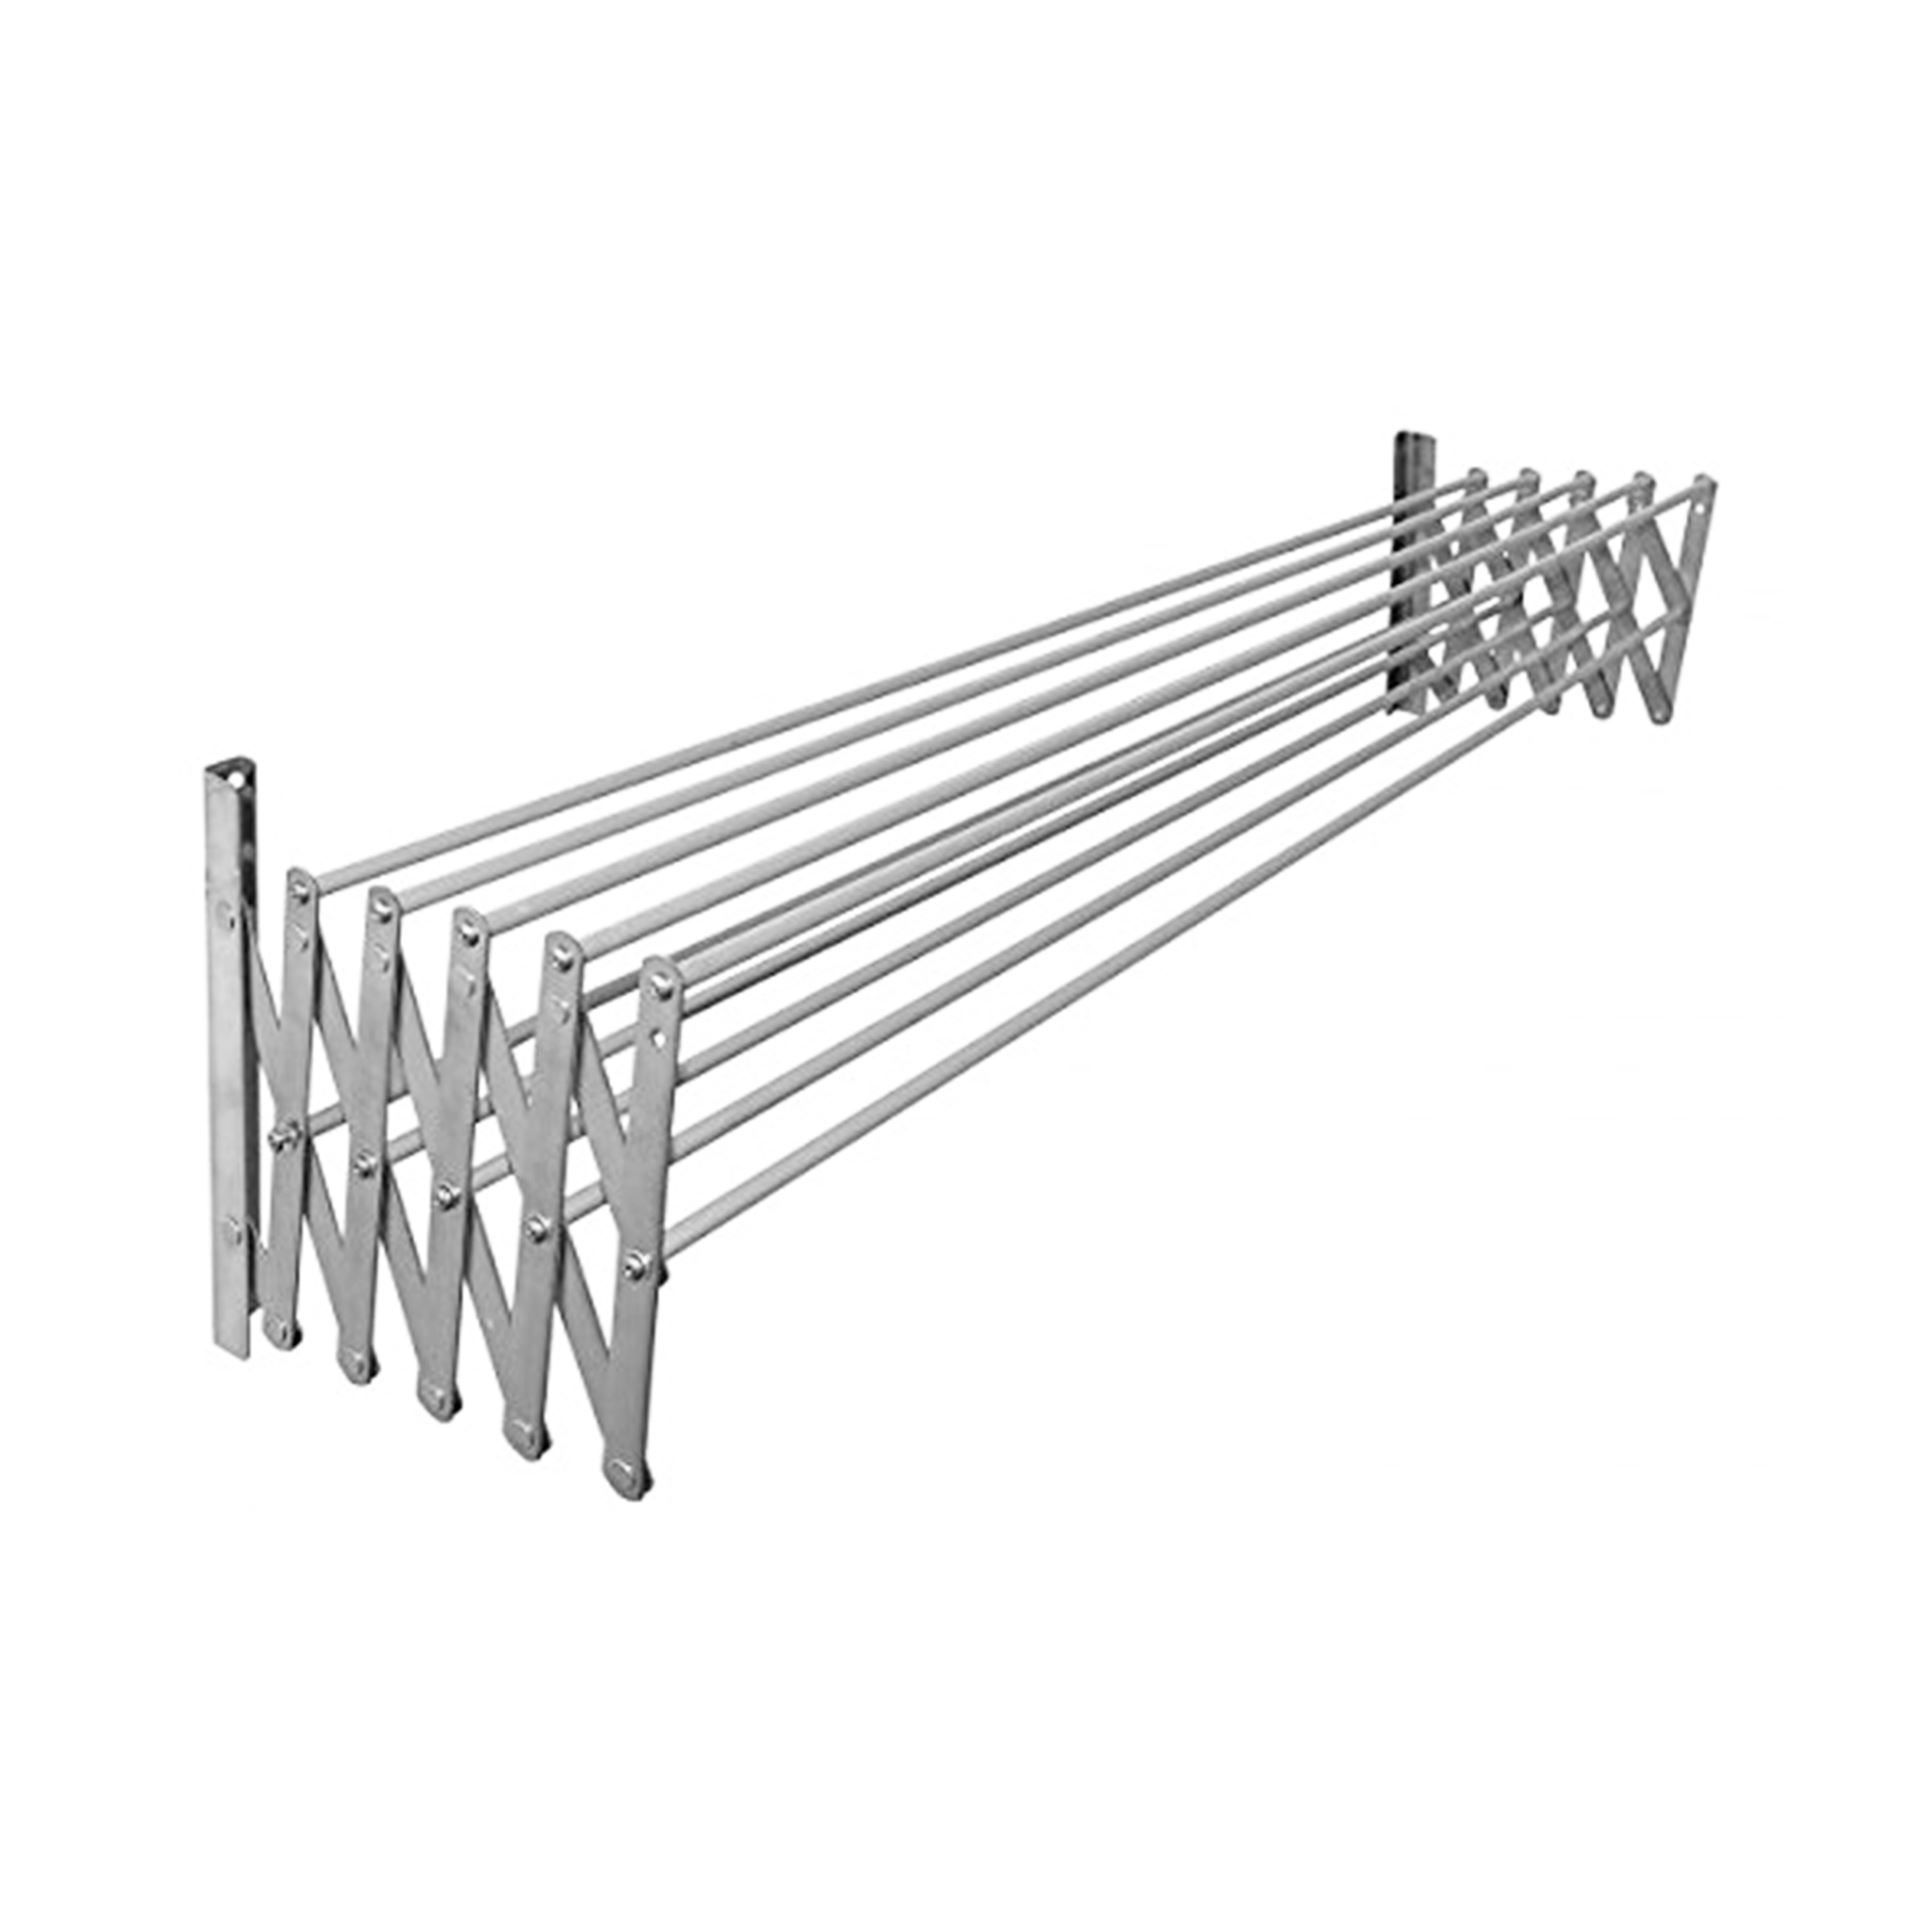 Tendedero 5 barras extensible para pared de aluminio, 9 metros de tendido